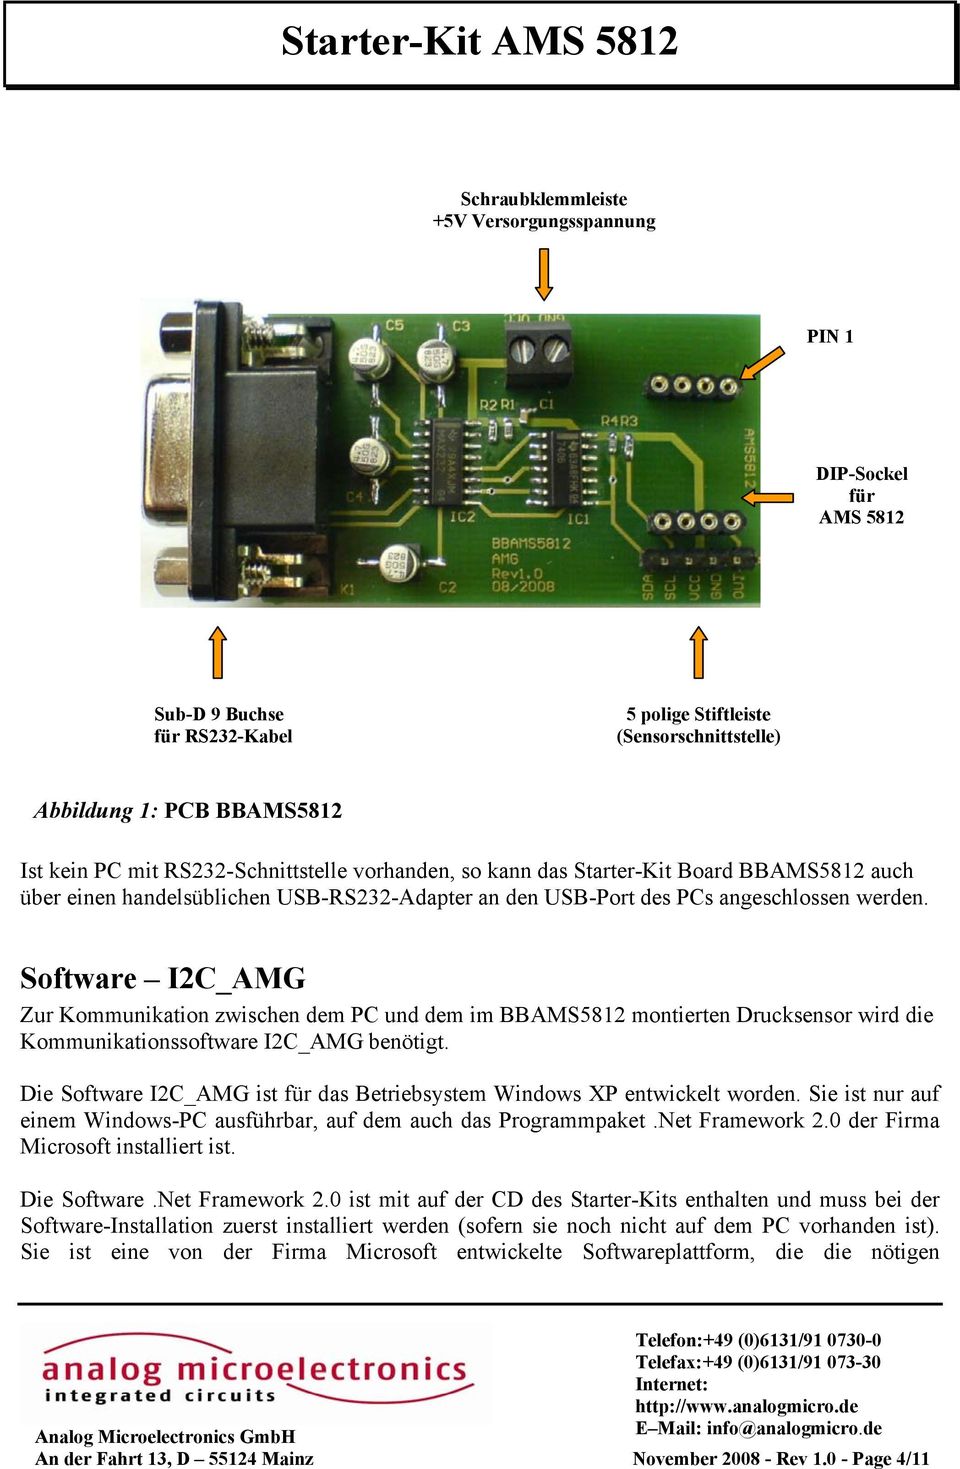 Software I2C_AMG Zur Kommunikation zwischen dem PC und dem im BBAMS5812 montierten Drucksensor wird die Kommunikationssoftware I2C_AMG benötigt.